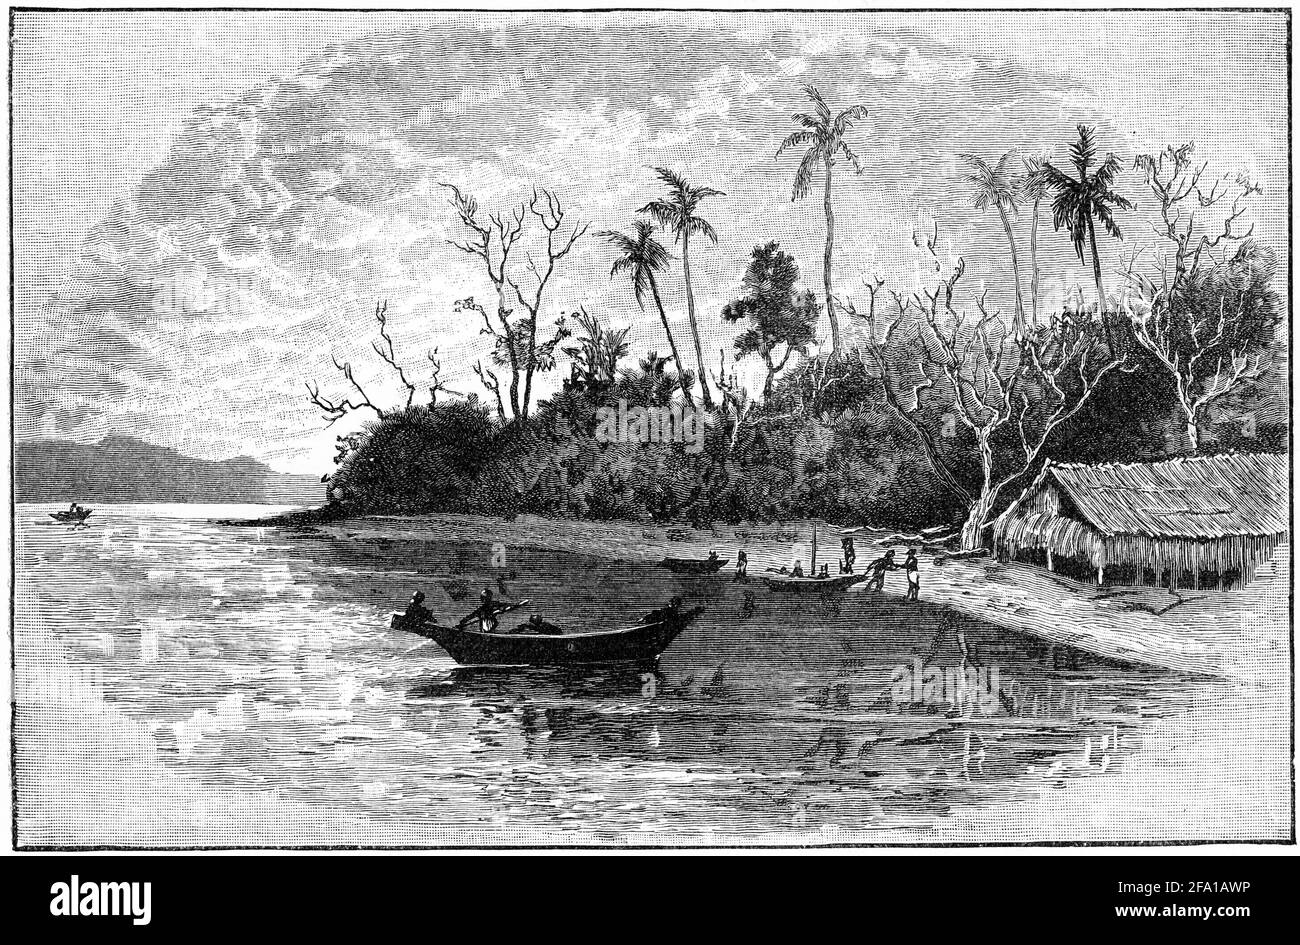 Gravure de Dinner Island en Nouvelle Guinée, pendant les années 1880 Banque D'Images